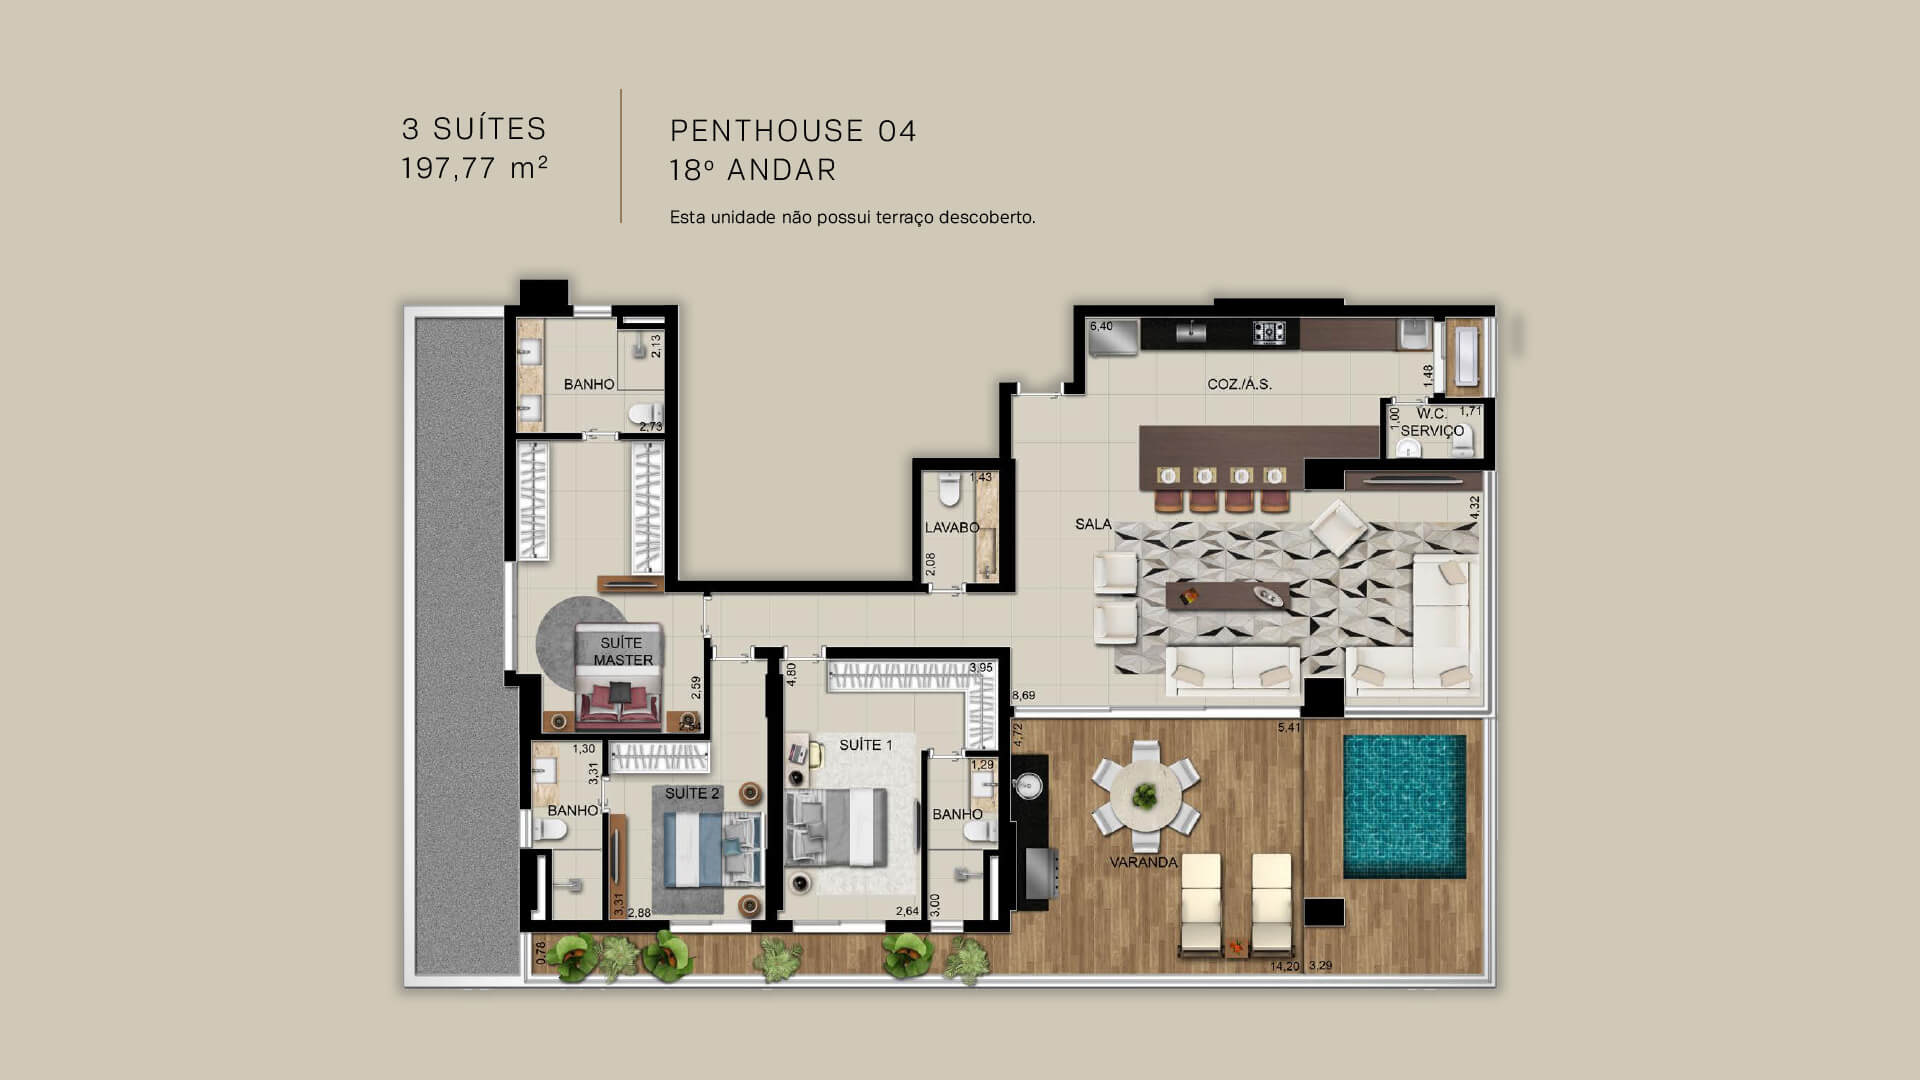 PENTHOUSE 04 - 3 SUÍTES 197,77 m²